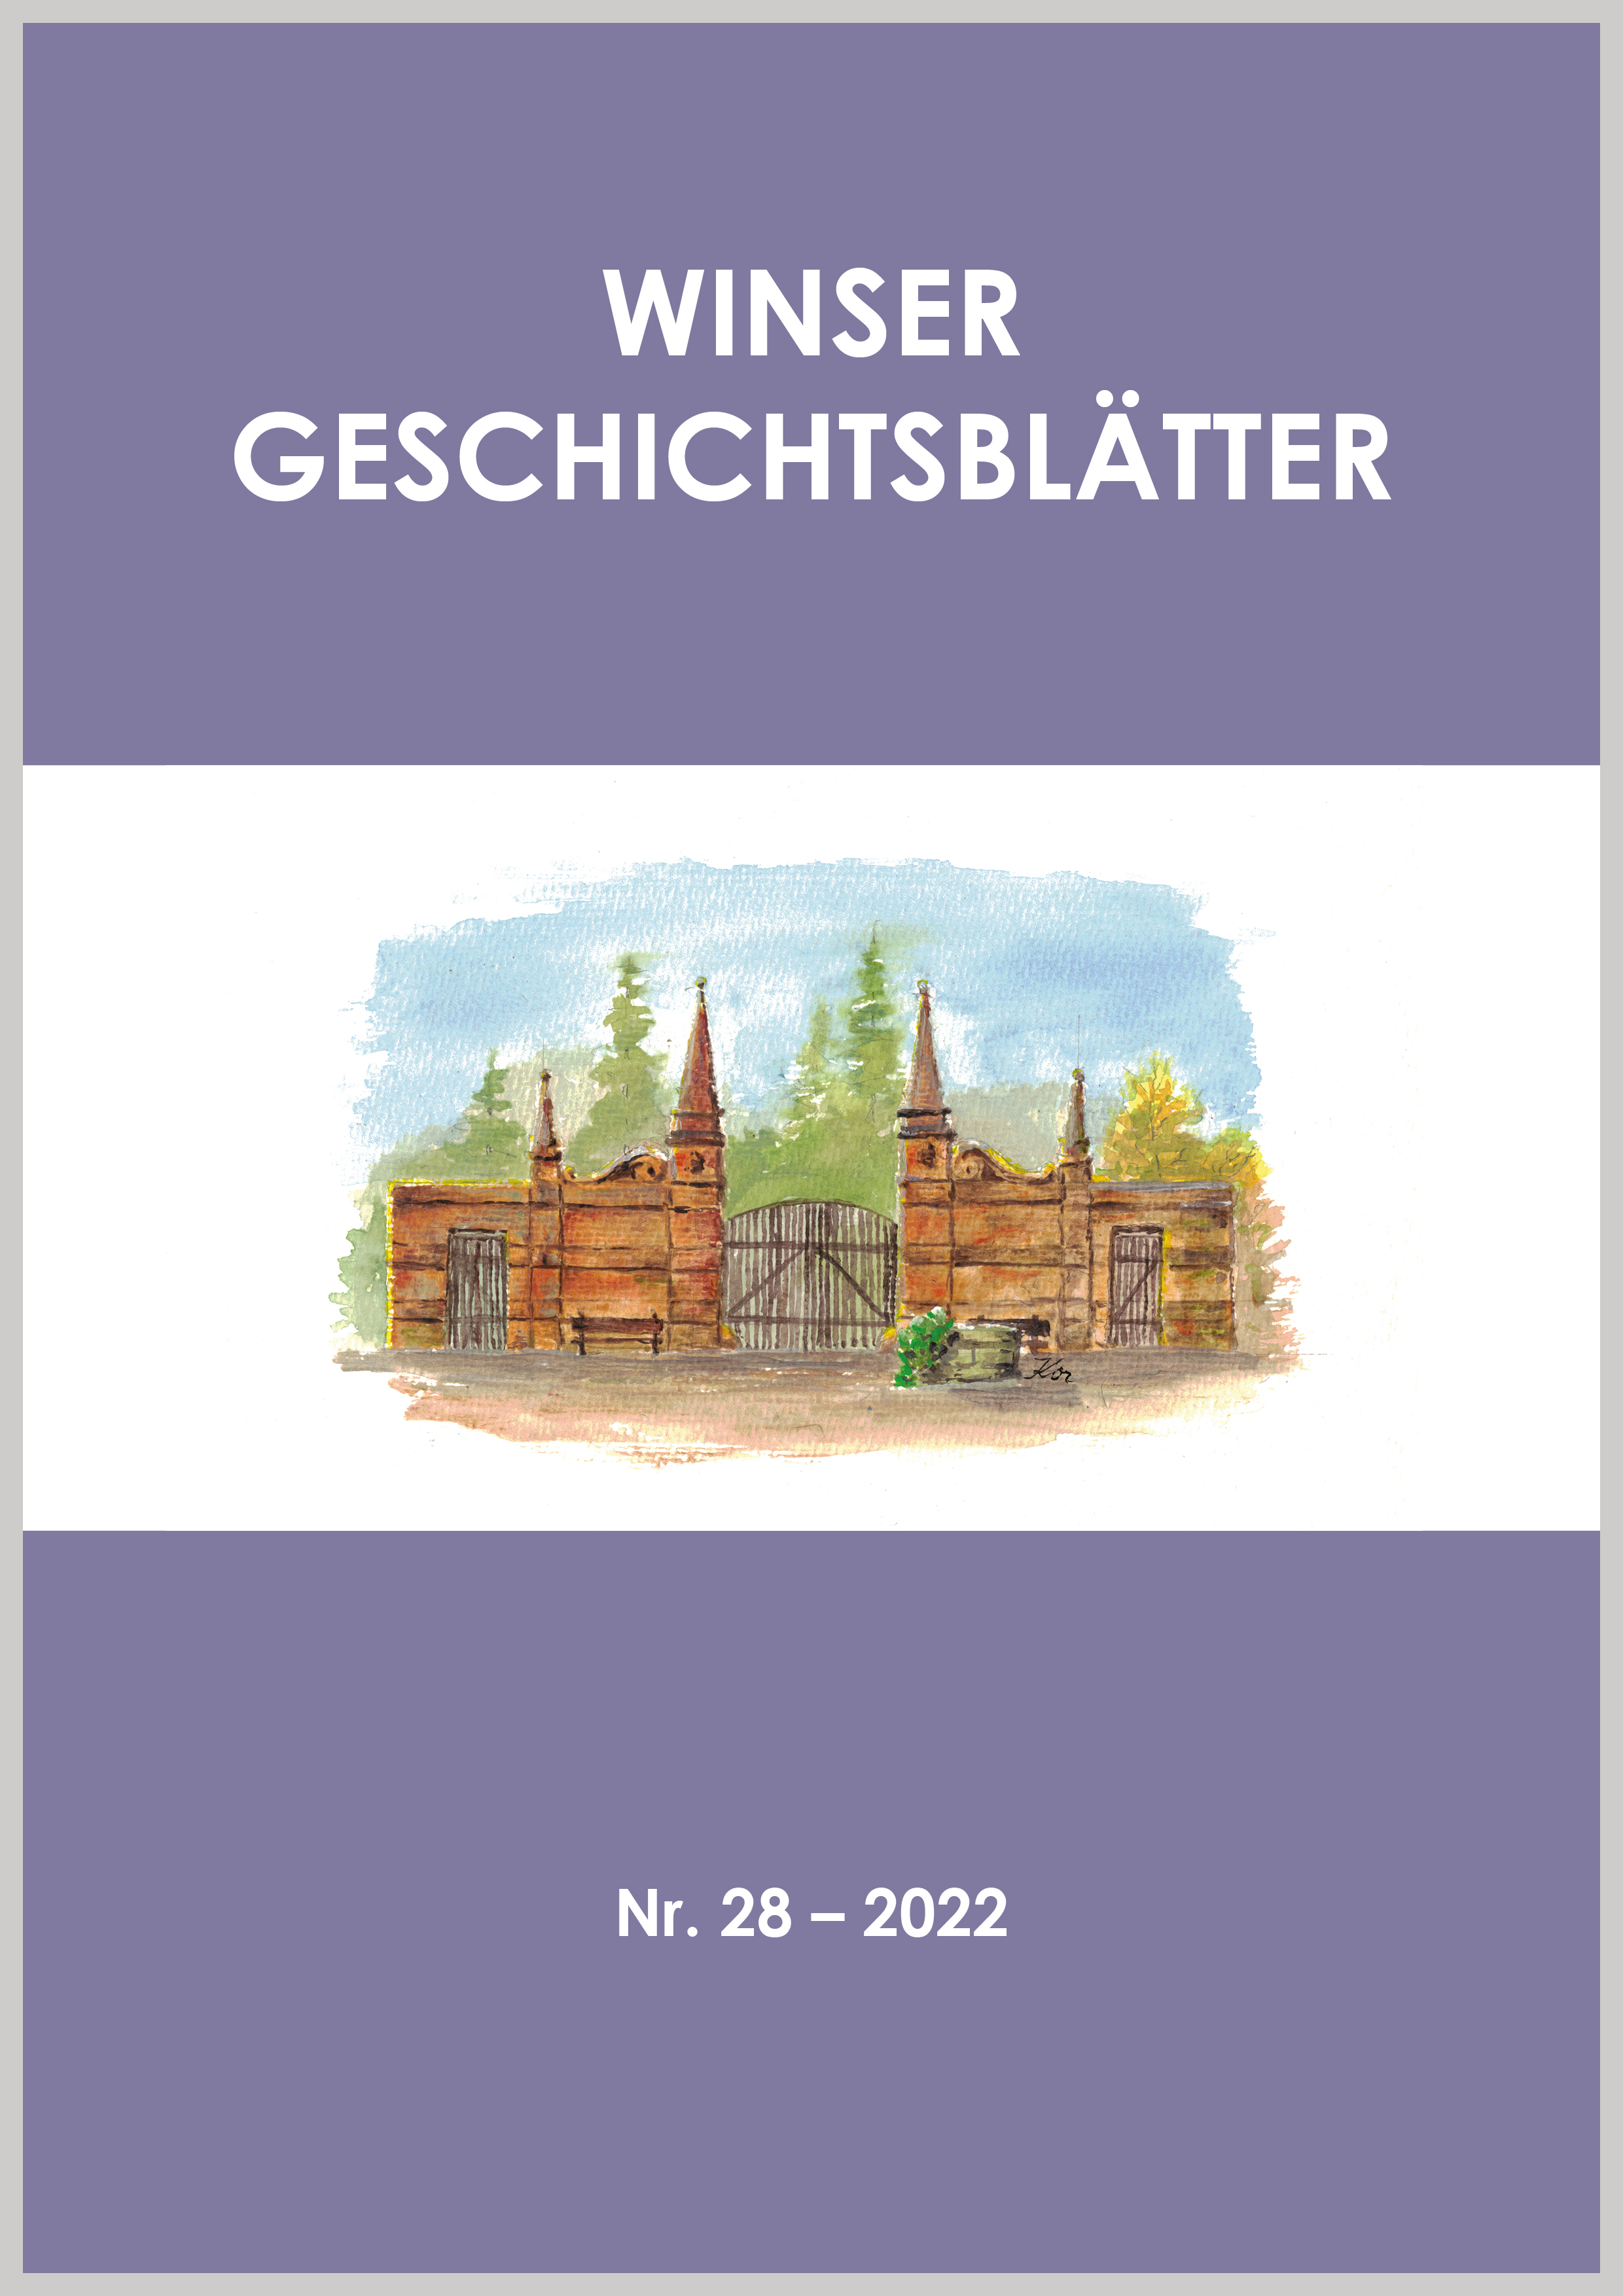 Titel "Winser Geschichtsblätter Nr. 28 – 2022" mit Zeichnung eines Tores.